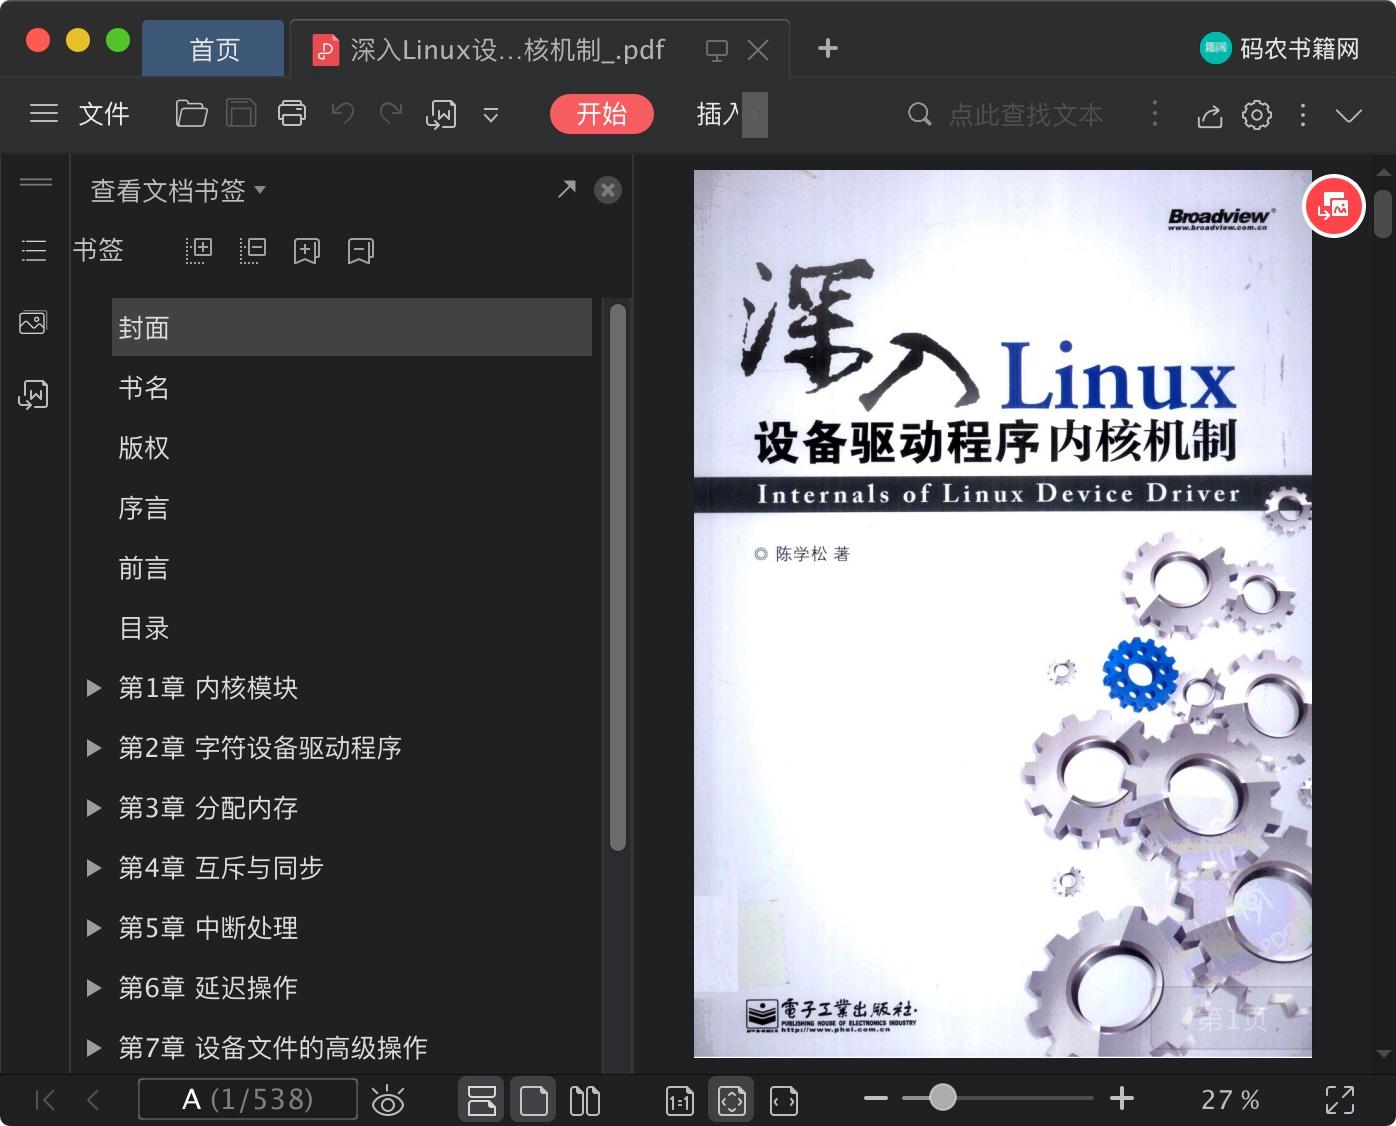 深入Linux教程设备驱动程序内核机制pdf电子书籍下载百度网盘